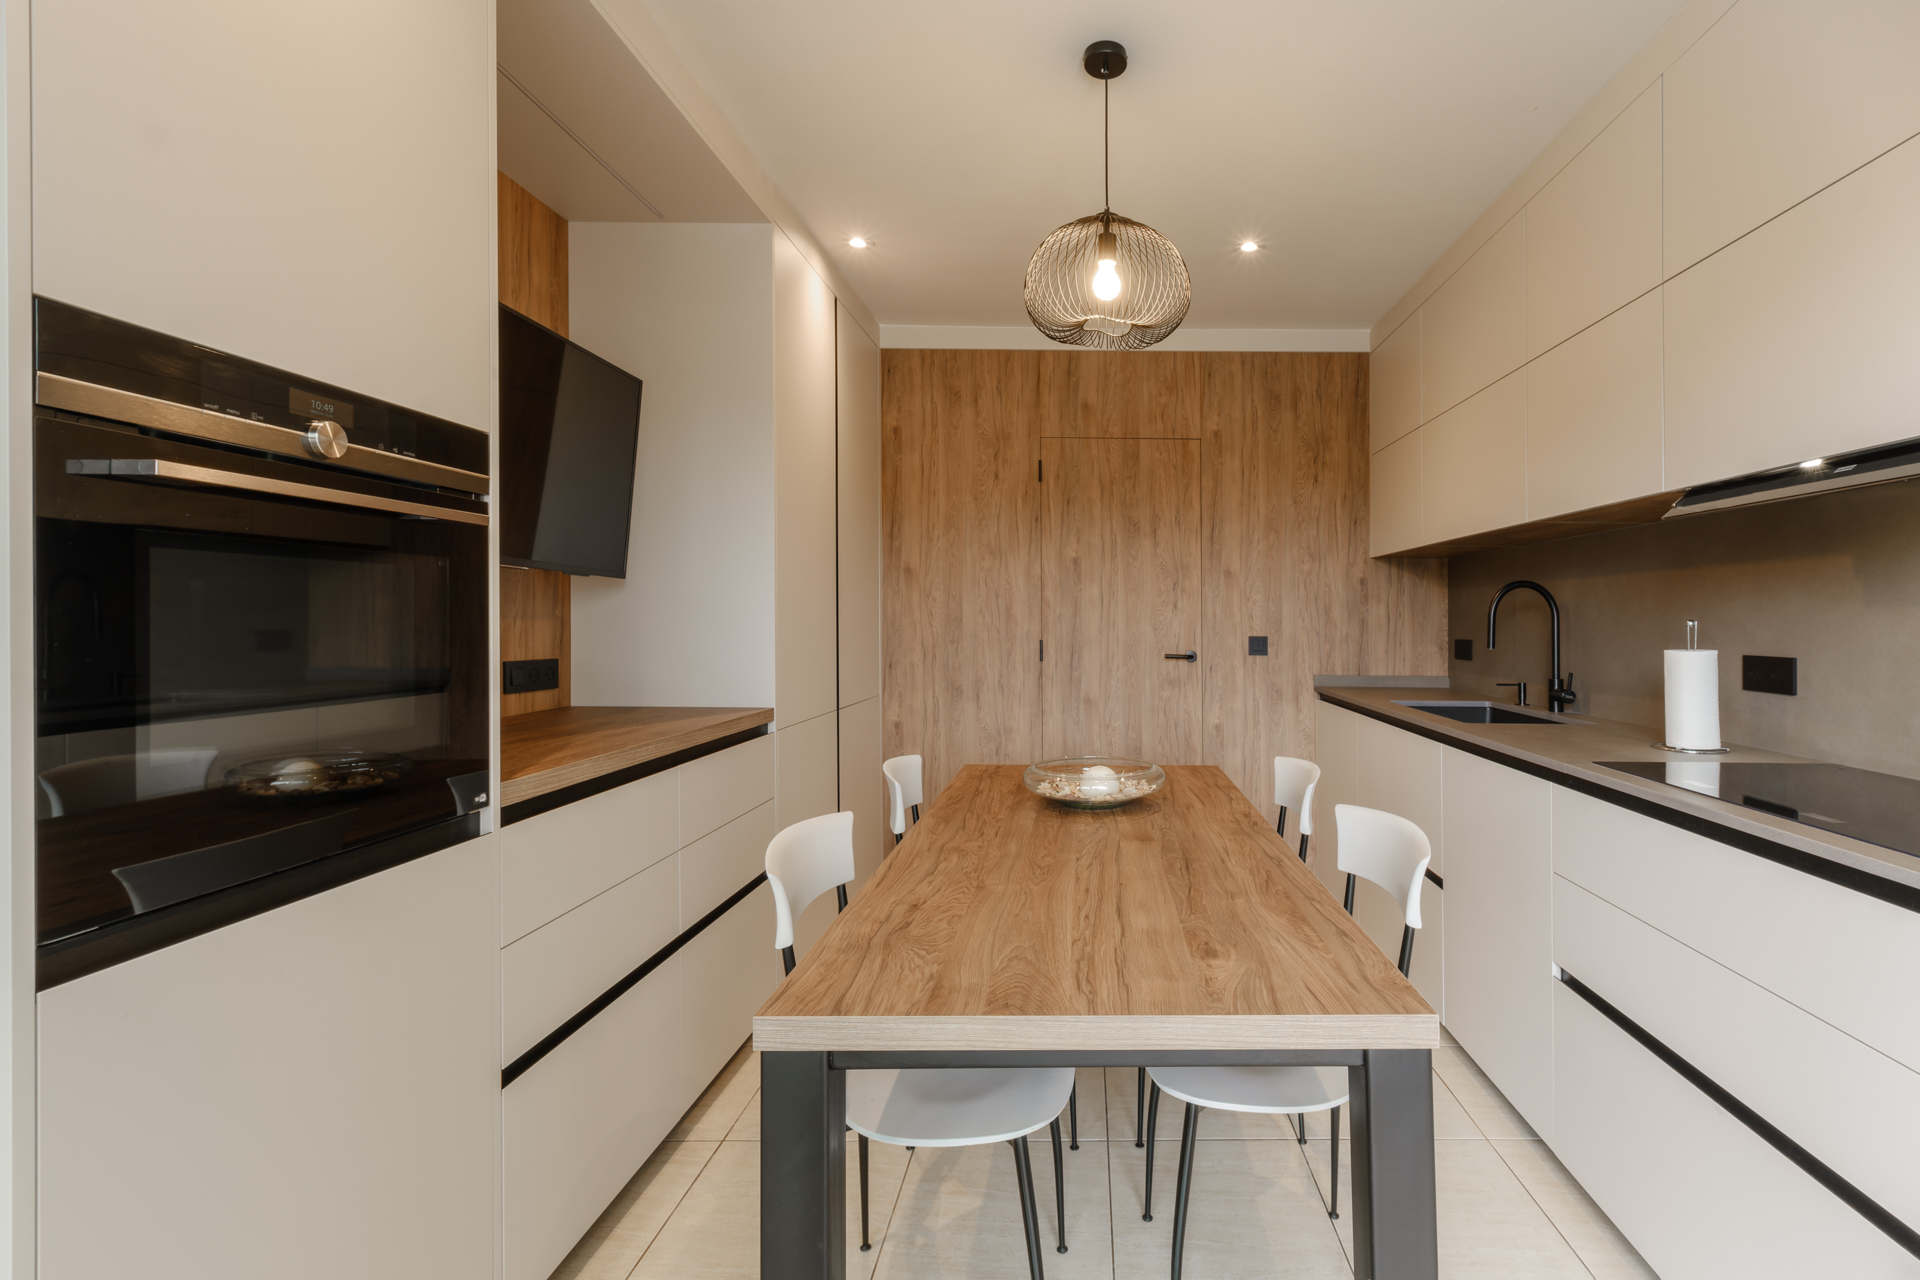 El diseño implica arriesgar, y usar LED en la cocina es una apuesta  elegante #cocinas …